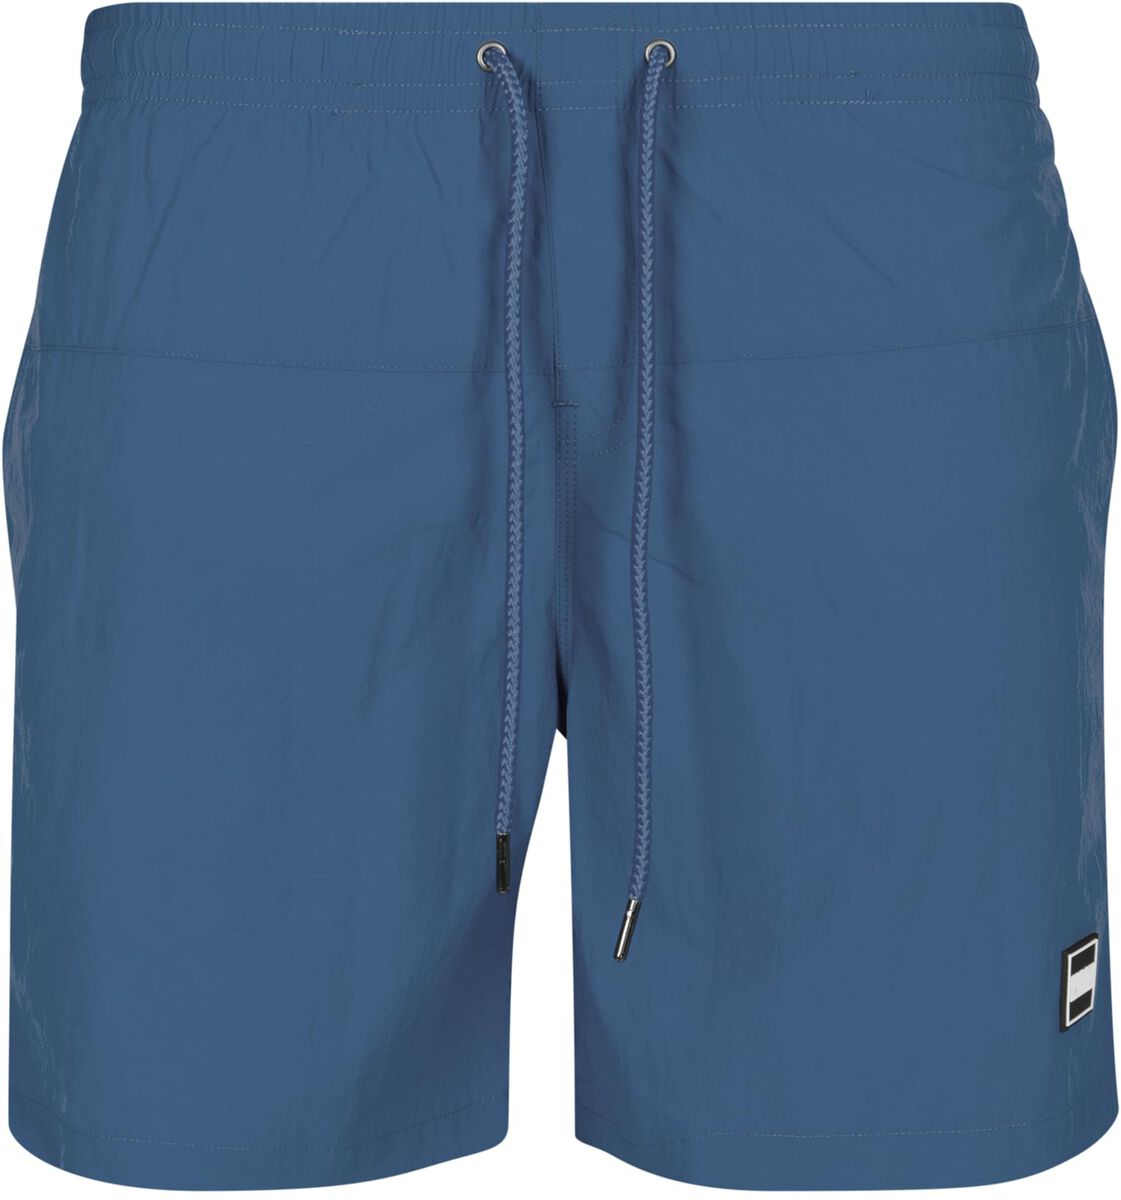 Urban Classics Badeshort - Block Swim Shorts - S bis 4XL - für Männer - Größe 4XL - blau